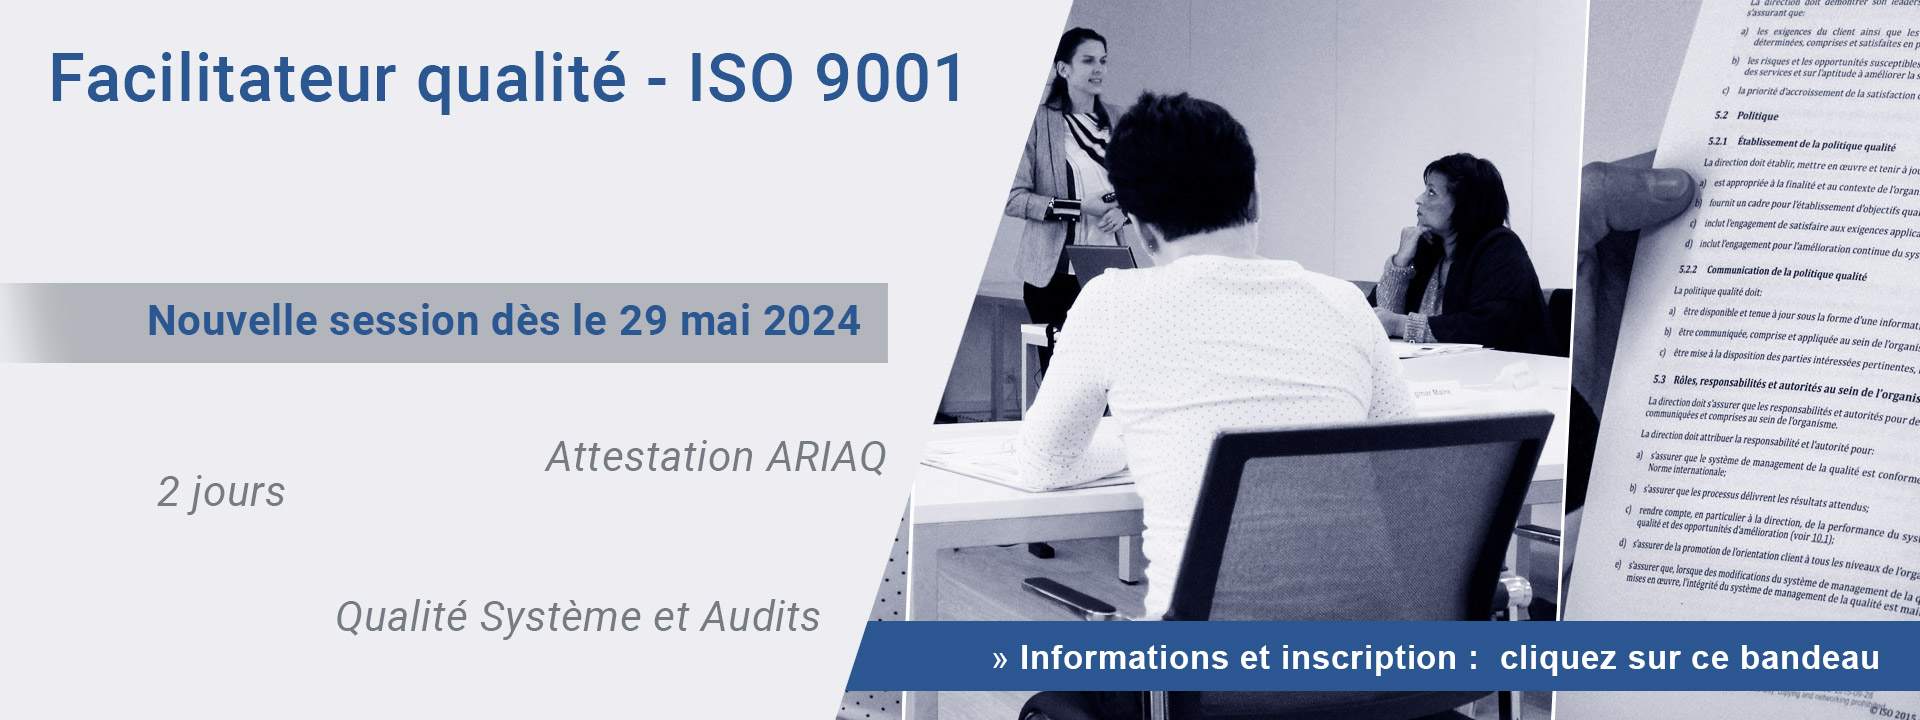 Facilitateur qualité - ISO 9001